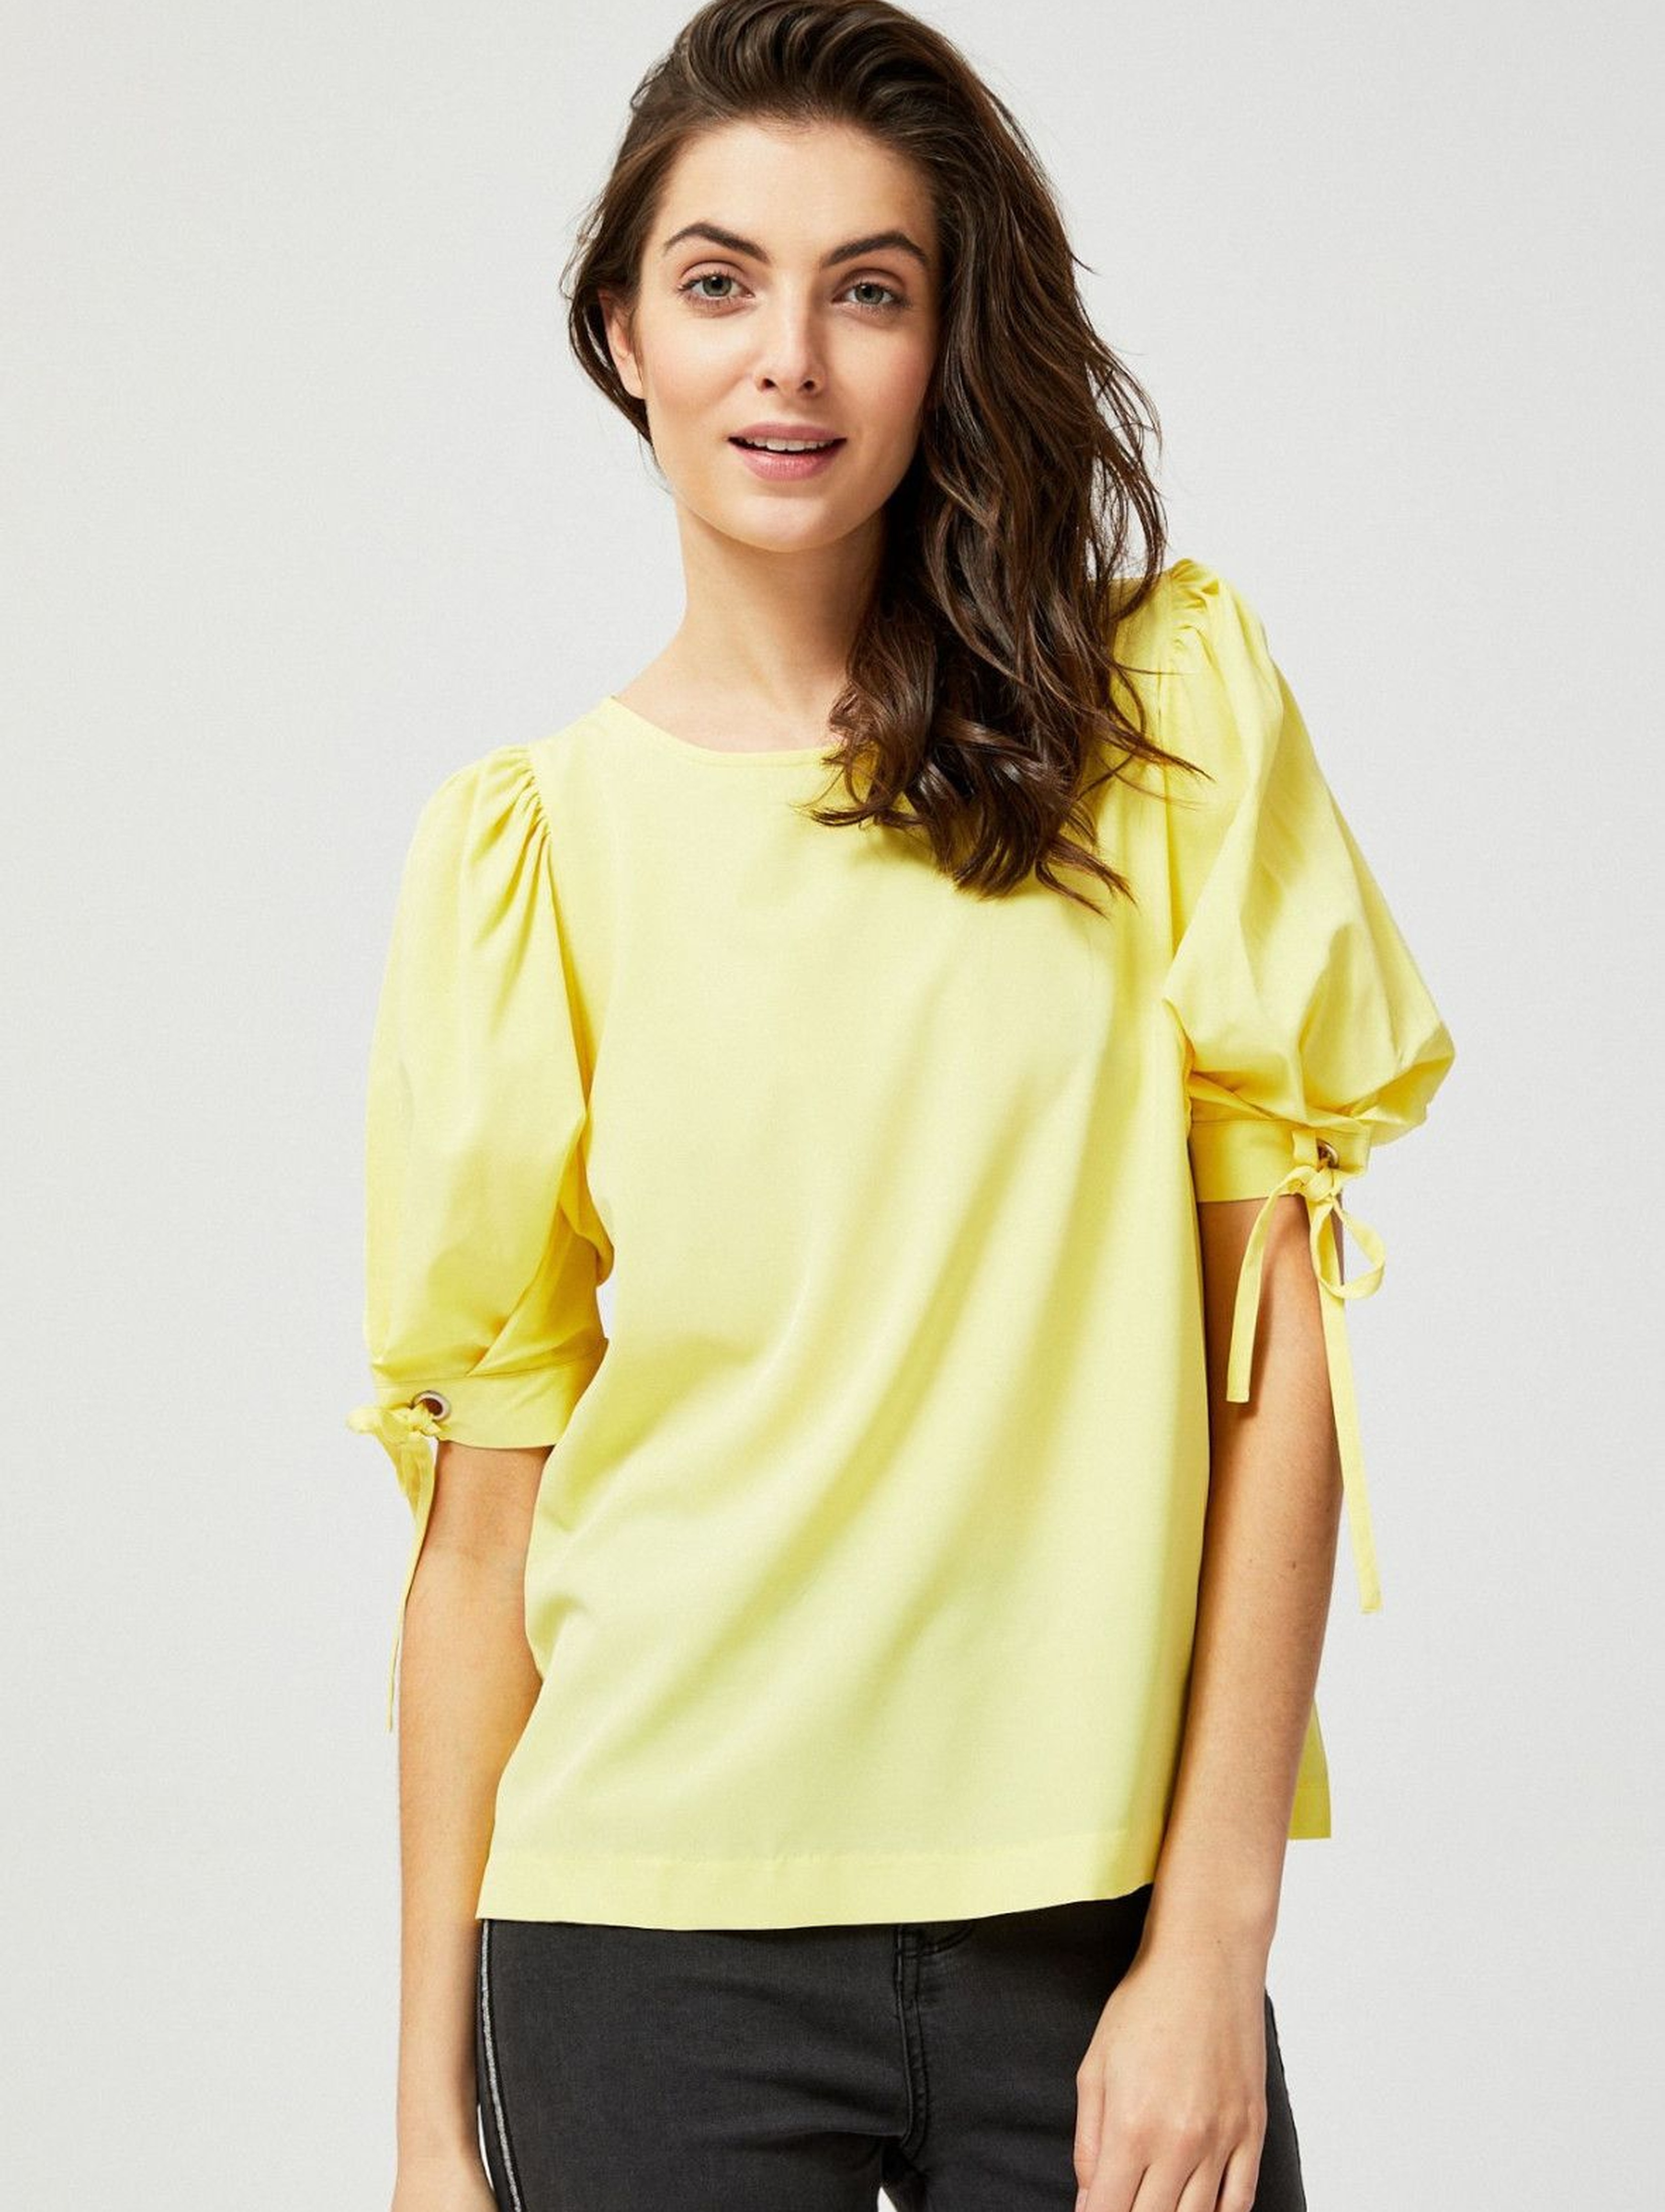 Bluzka koszulowa z bufiastymi rękawami - żółta